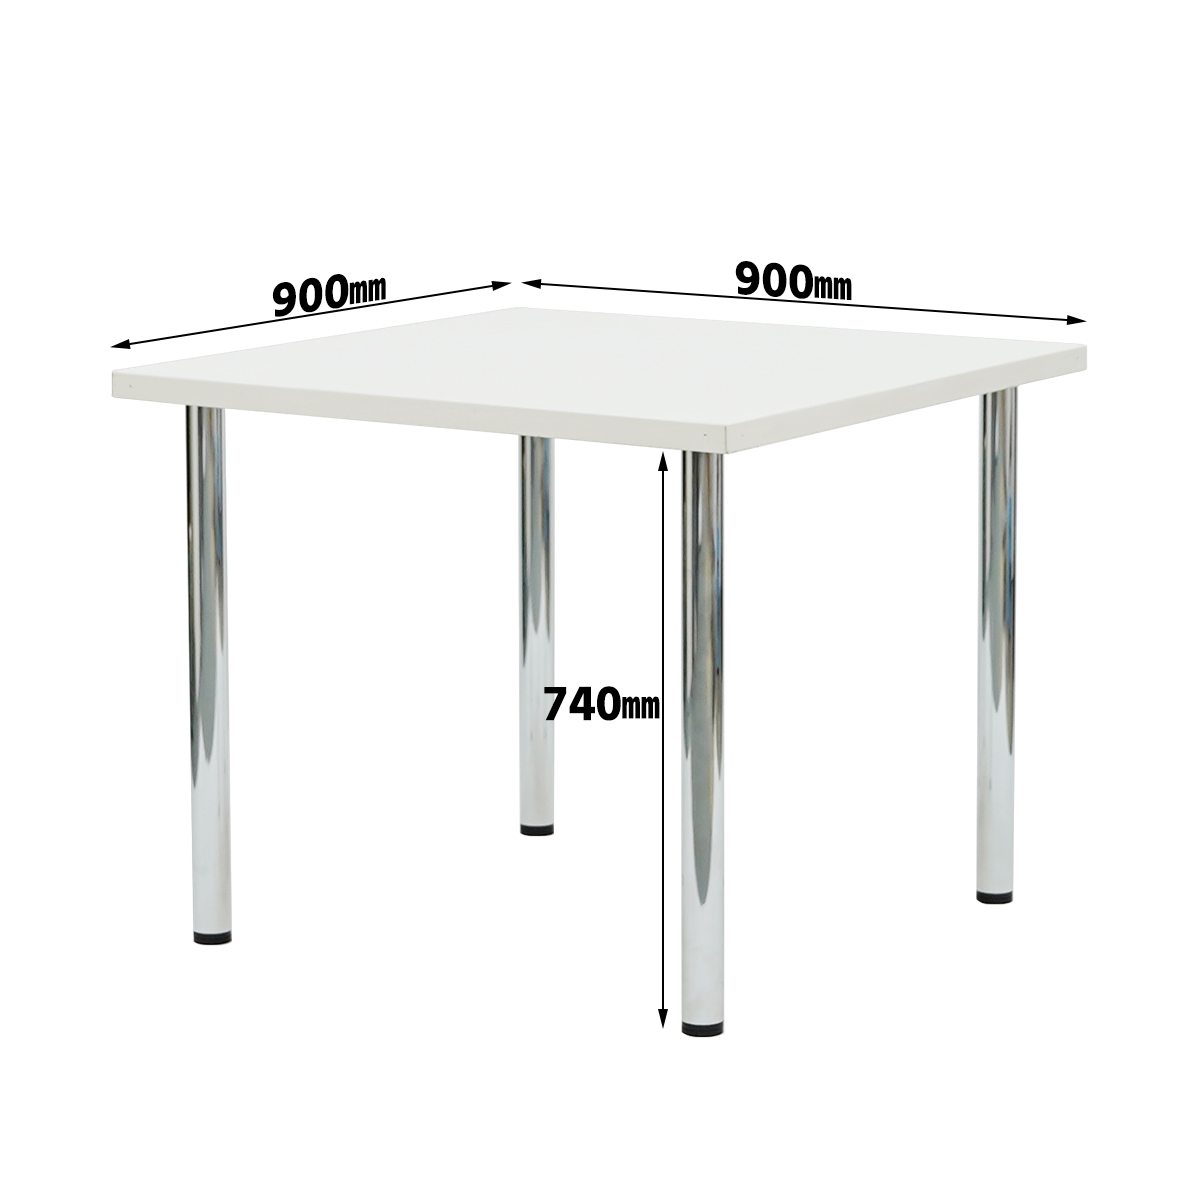 マルチテーブル900角(正方形)ホワイト